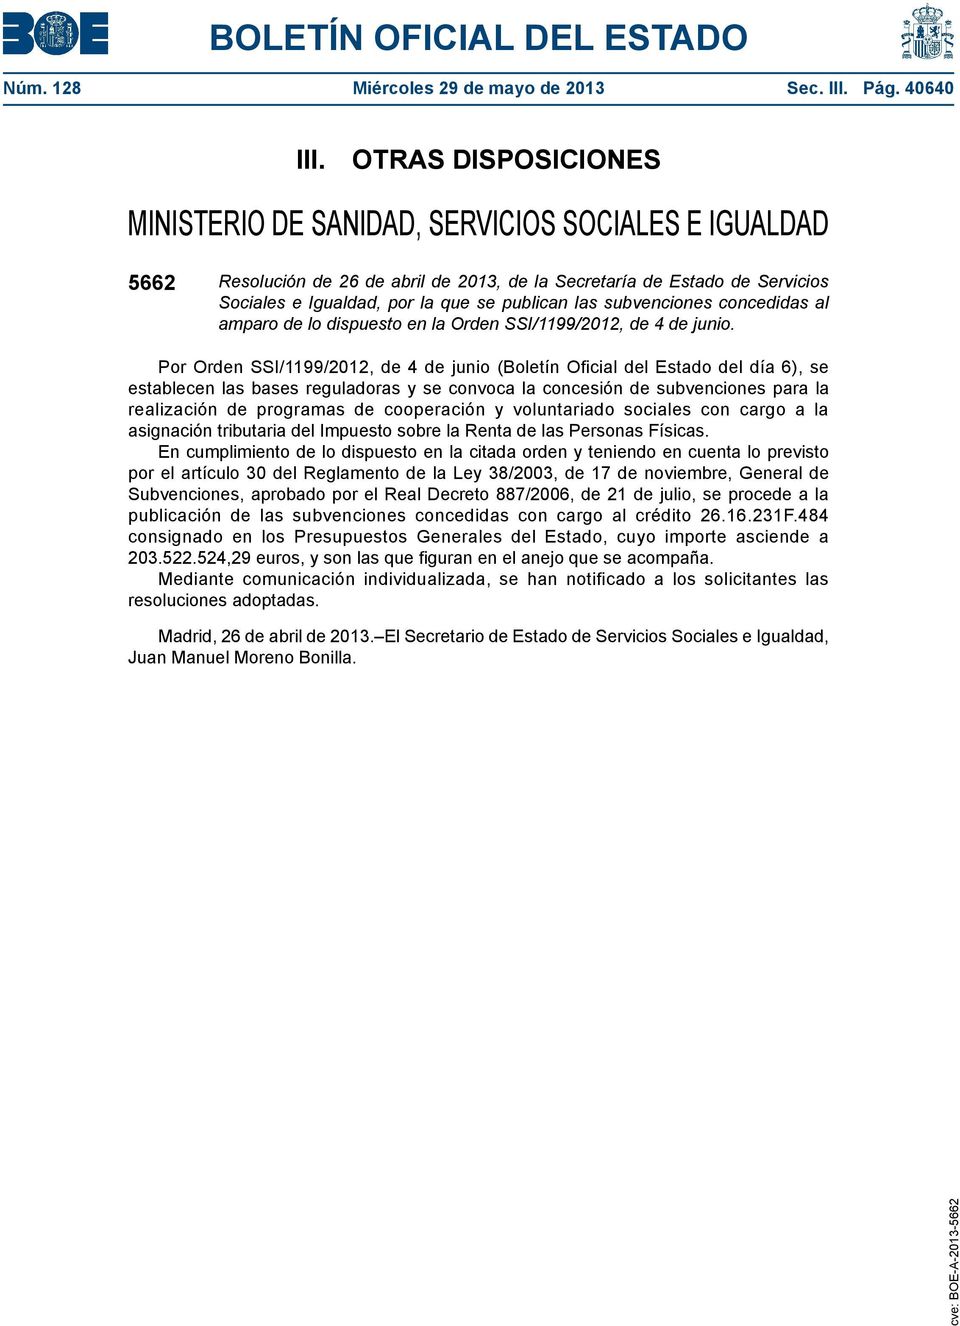 las subvenciones concedidas al amparo de lo dispuesto en la Orden SSI/1199/2012, de 4 de junio.